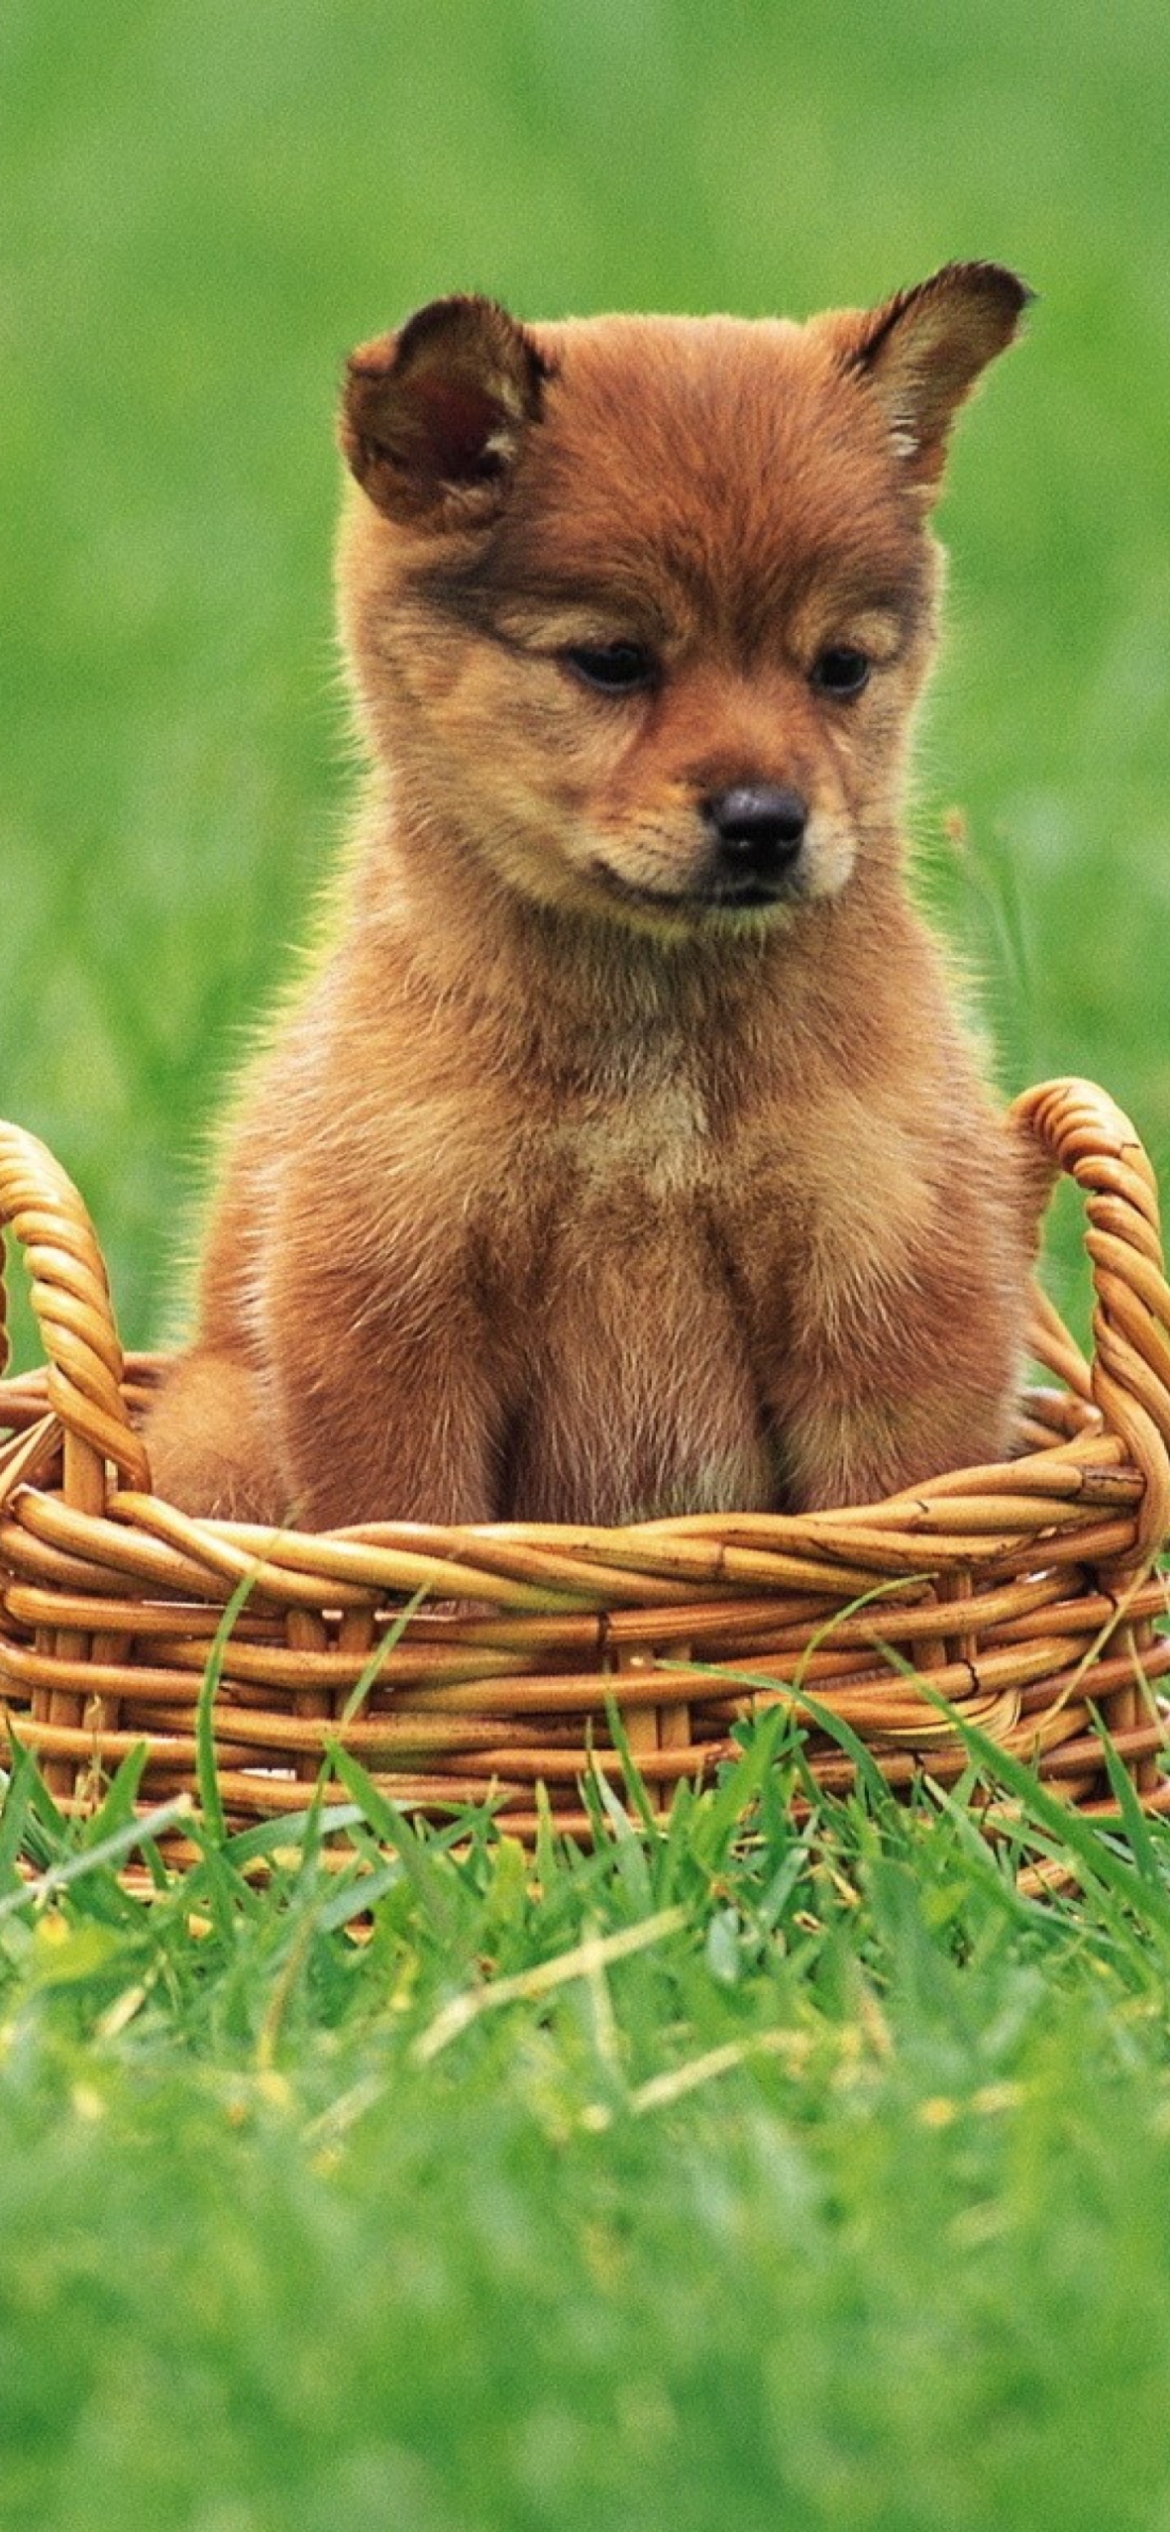 Das Puppy In Basket Wallpaper 1170x2532